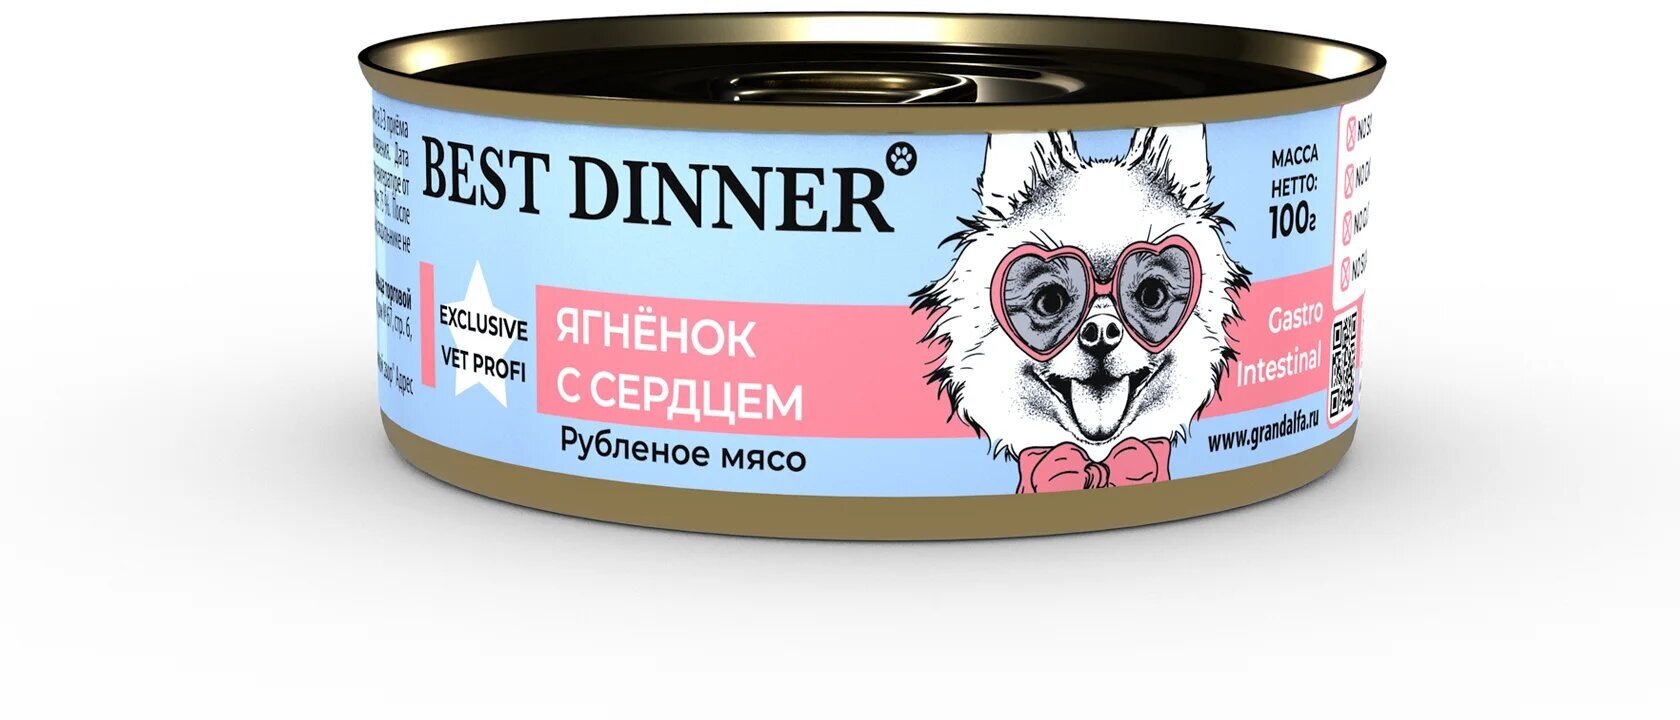 Best Dinner Vet Profi Gastro Intestinal Exclusive 24шт по 100г ягненок с сердцем консервы для собак